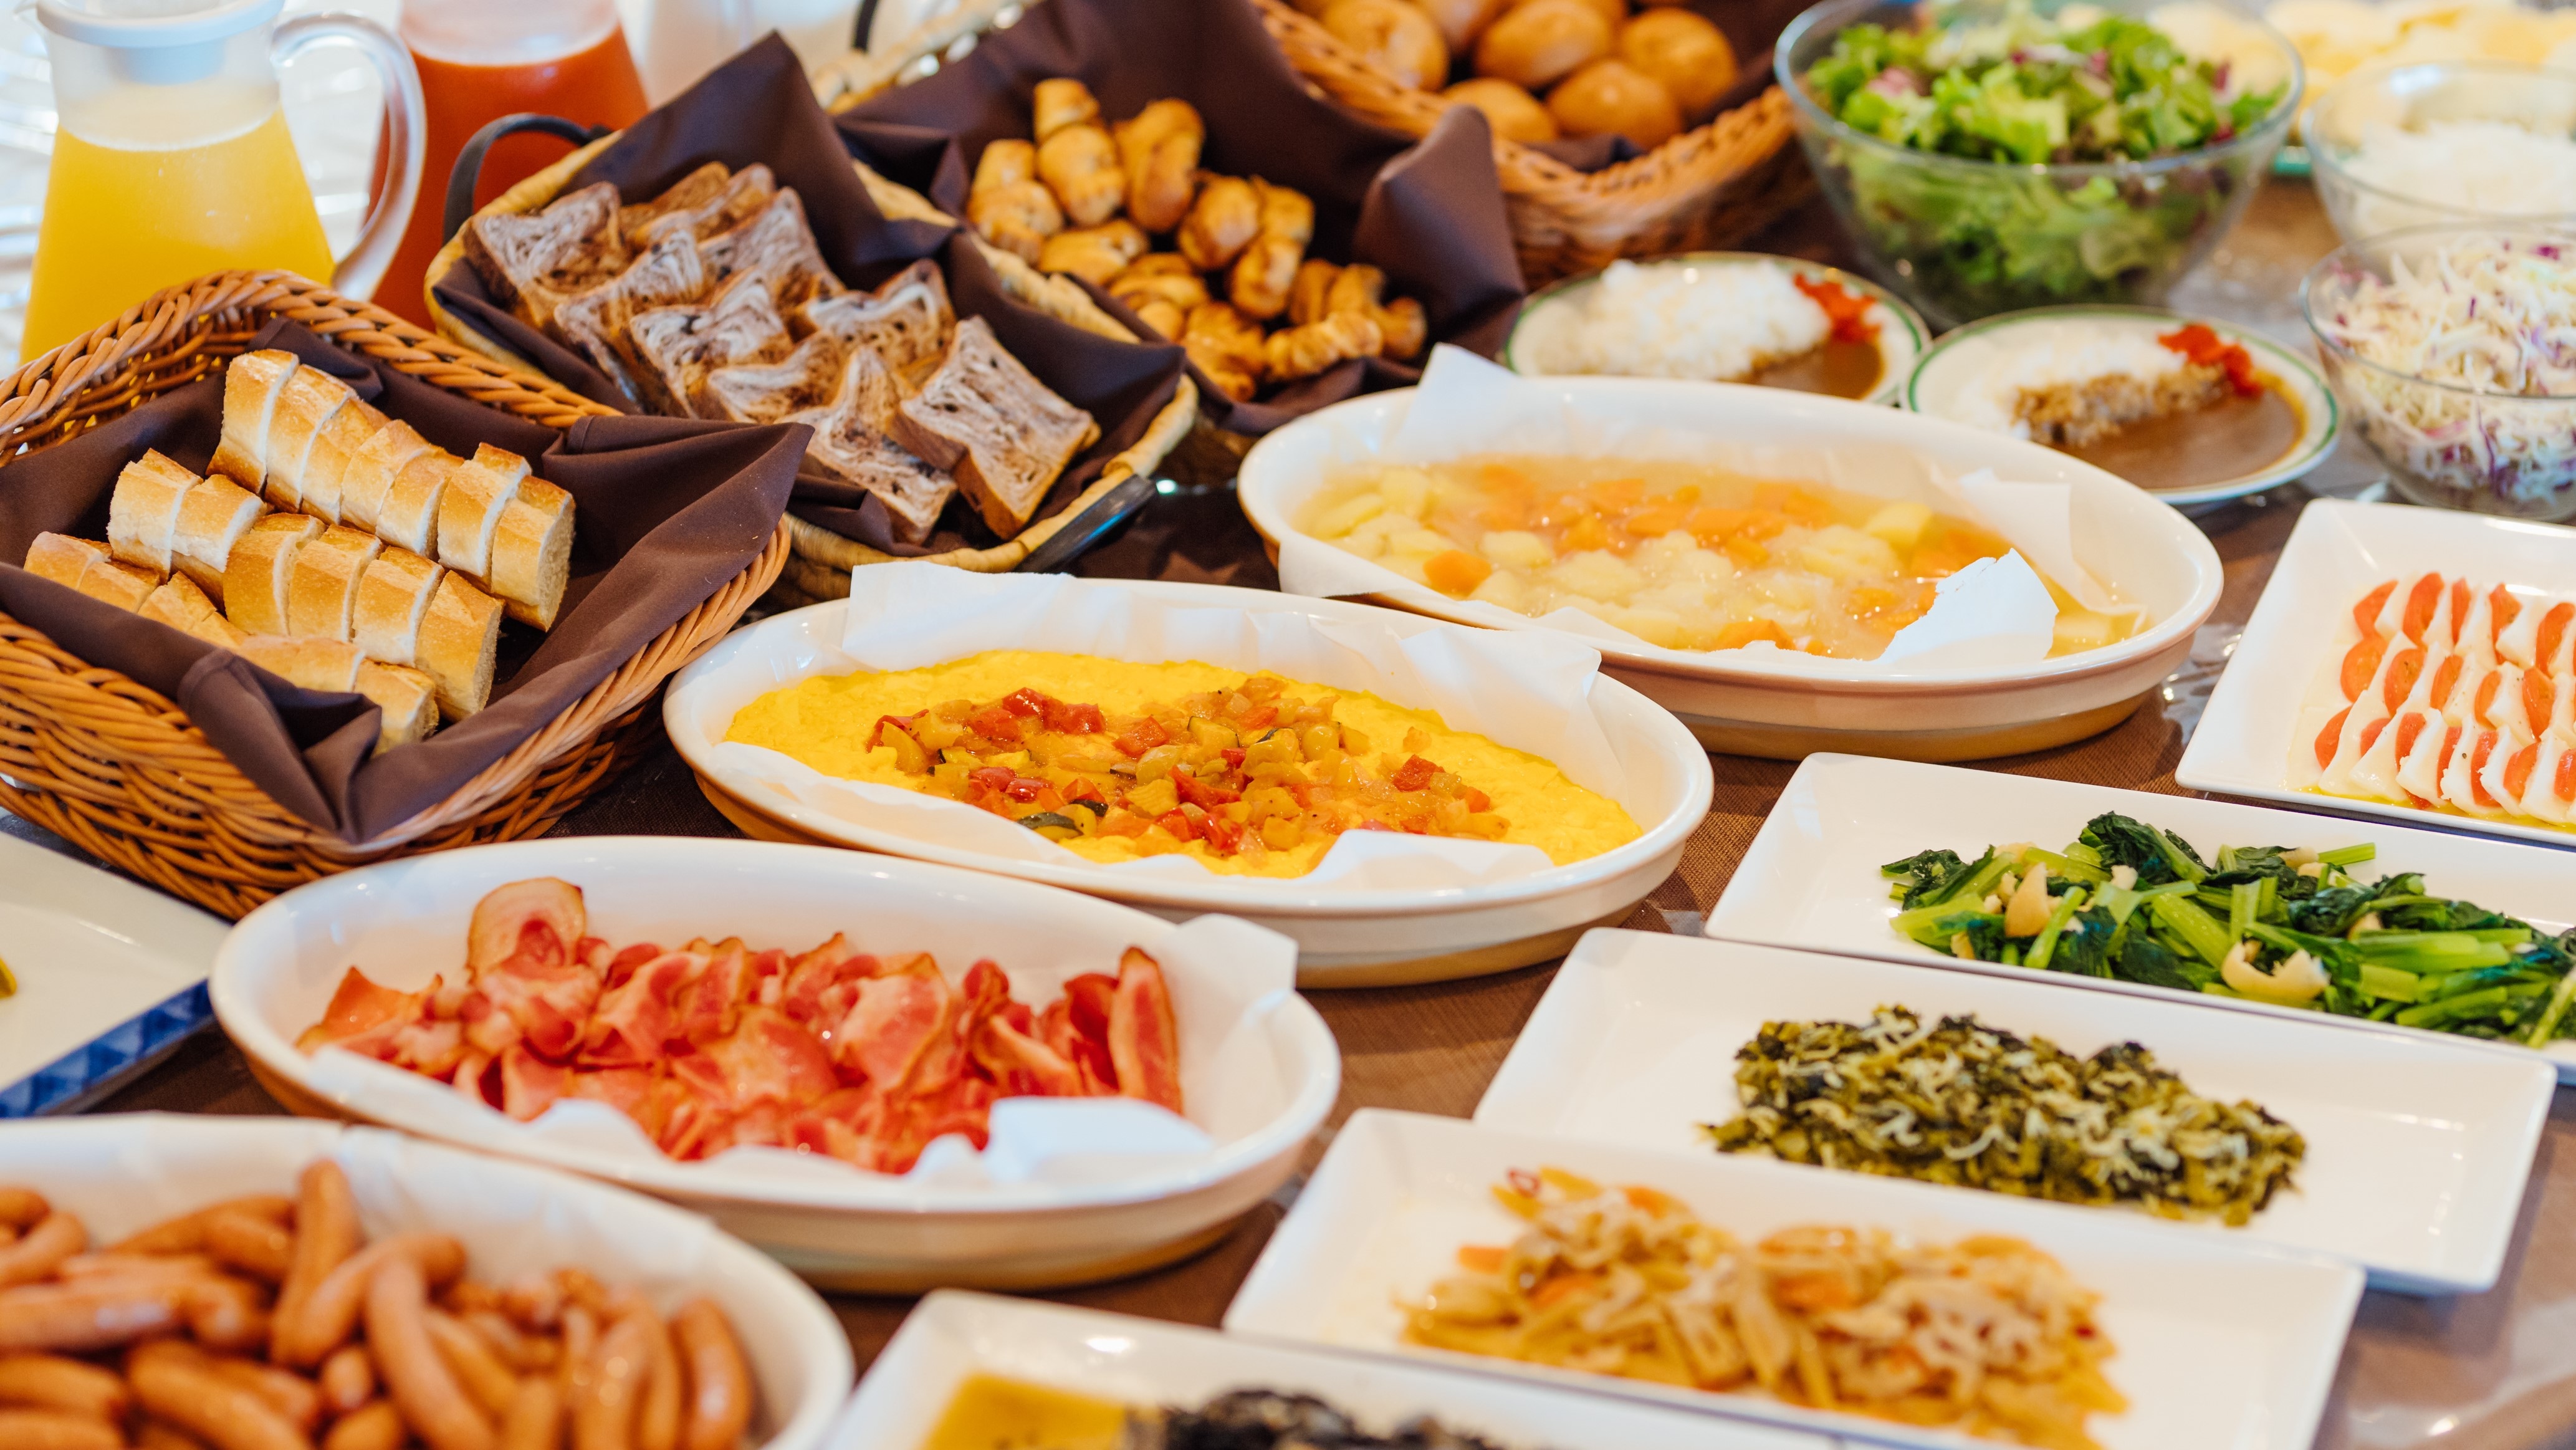 [Makan malam prasmanan] Populer! Lebih dari 60 jenis buffet Jepang, Barat dan Cina